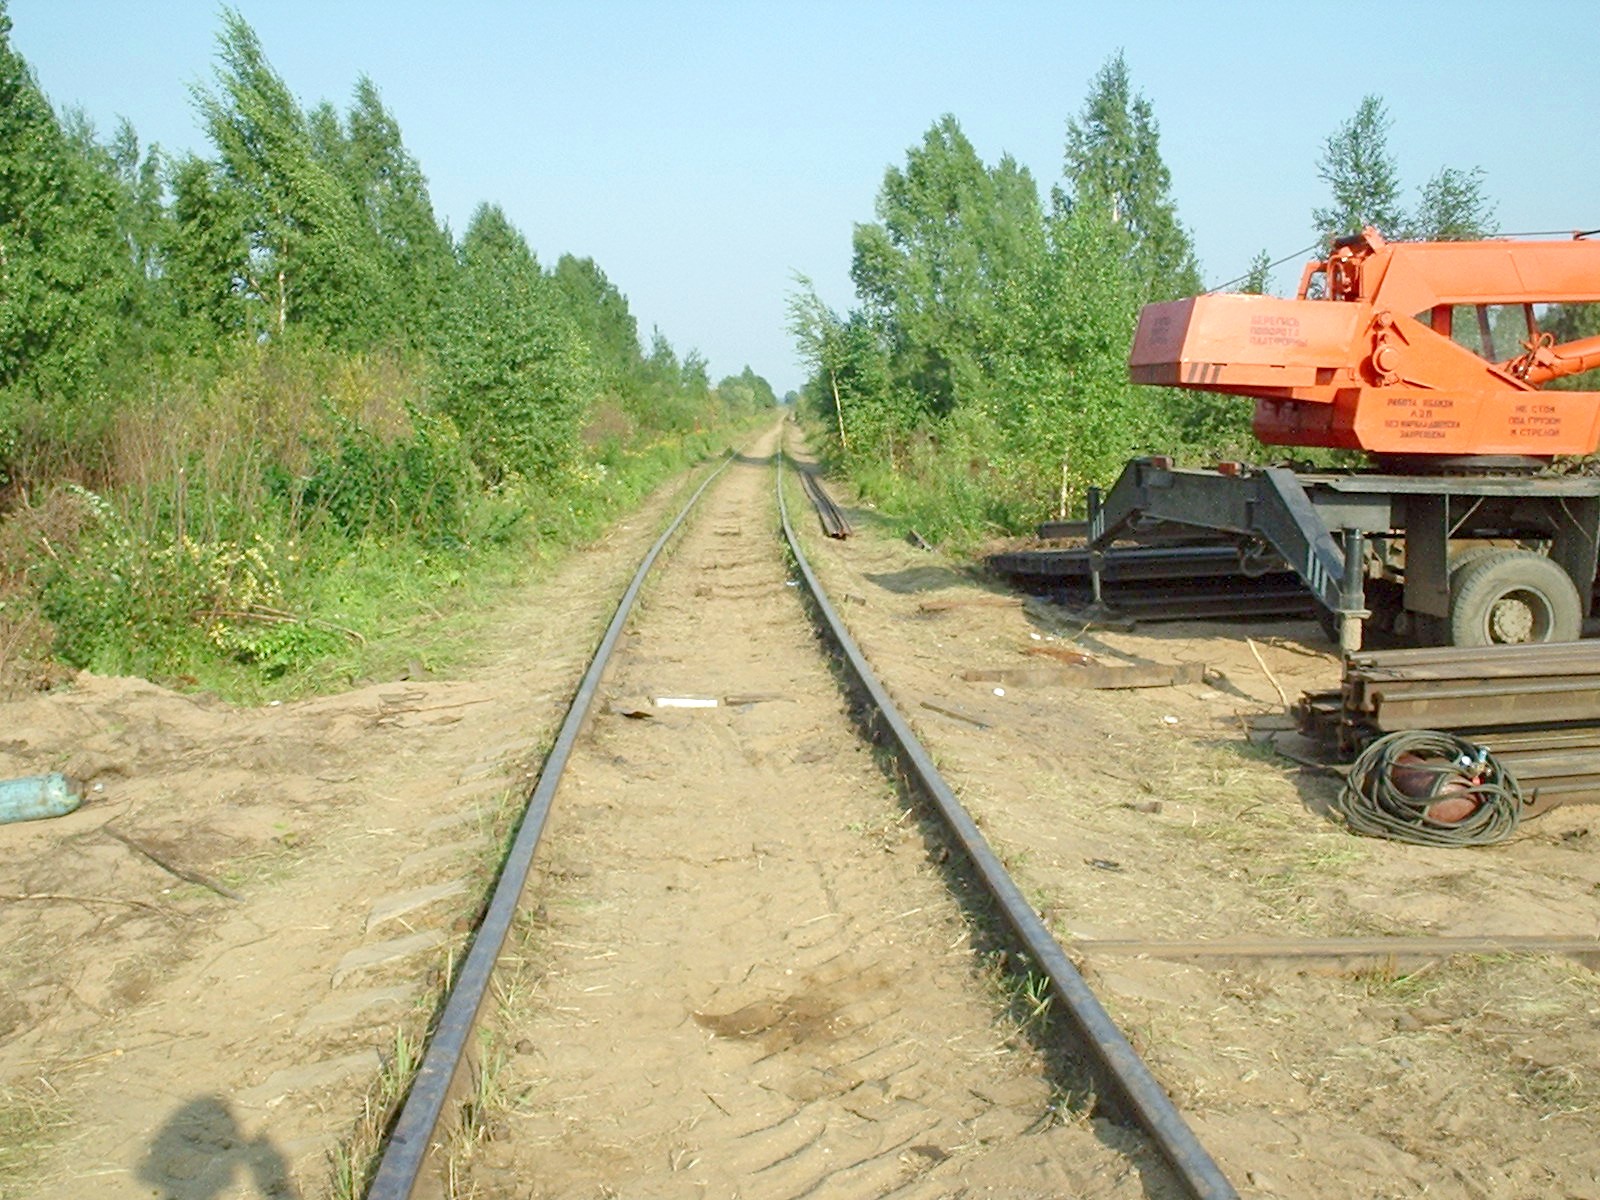 Железнодорожная линия Филино - Красный Профинтерн - фотографии, сделанные в 2005 году (часть 4)